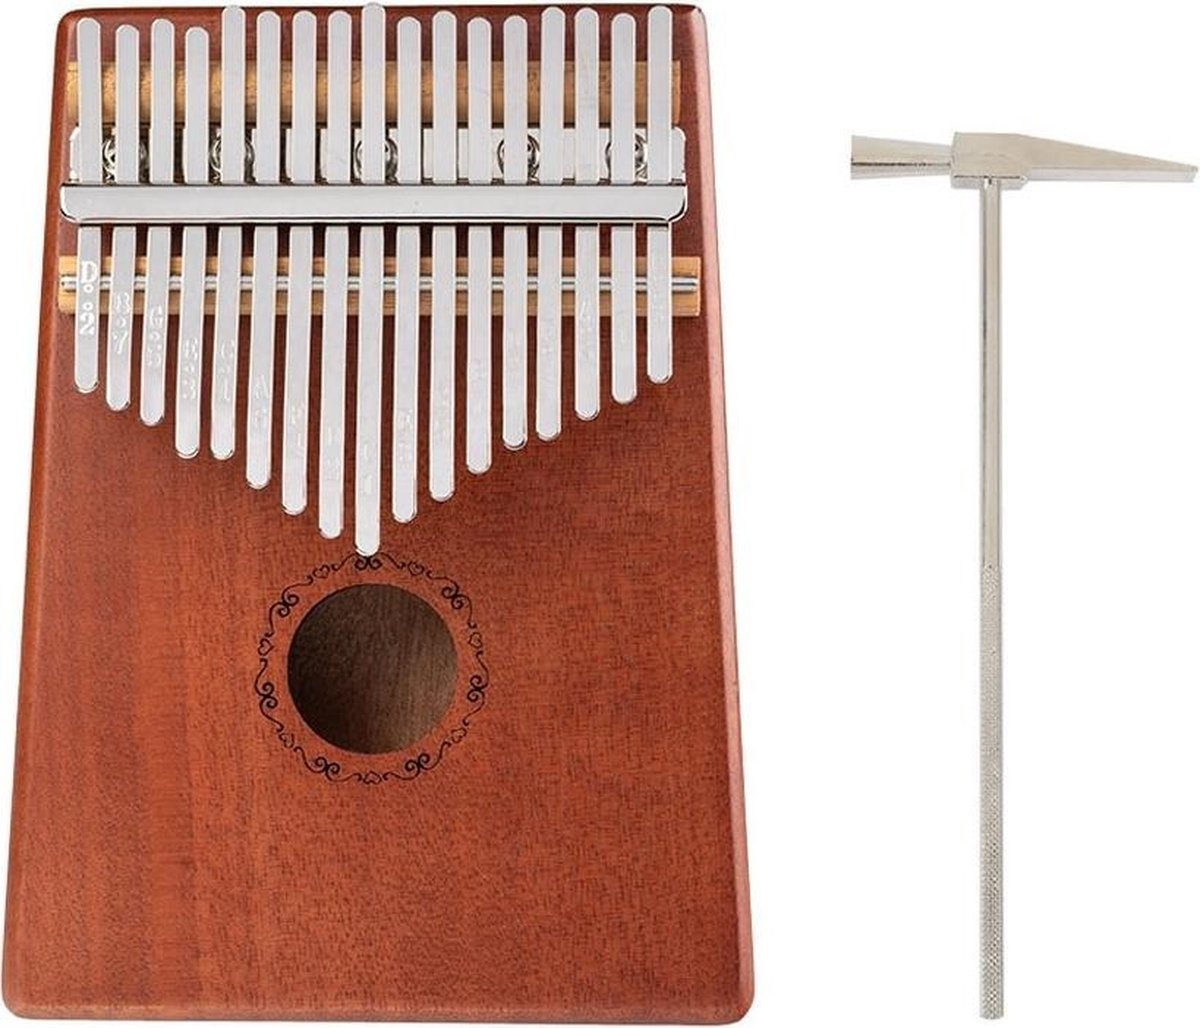 Ritmi Kalimba Set - Duimpiano - Muziekinstrument - Gemaakt van Mahonihout - 17 Tonen - Complete Set Inclusief Accessoires - Leuk Cadeau voor Man / Vrouw en Kind - Houtbruin